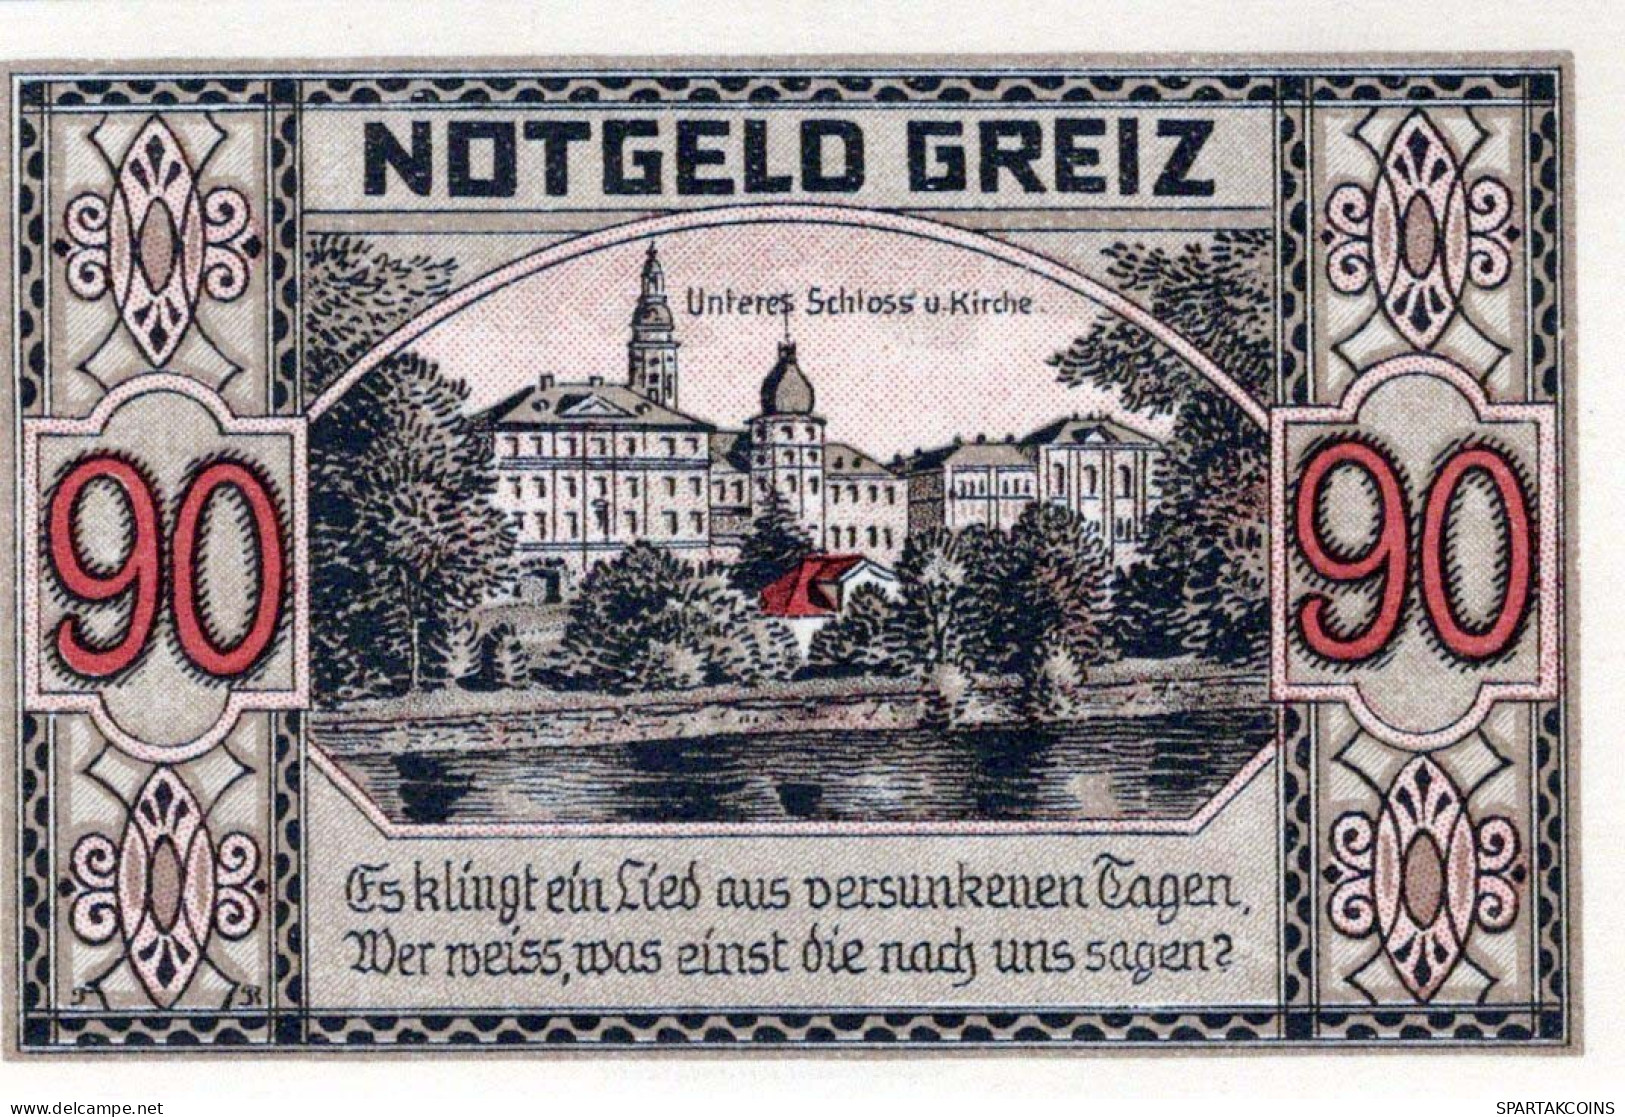 90 PFENNIG 1921 Stadt GREIZ Thuringia UNC DEUTSCHLAND Notgeld Banknote #PH700 - [11] Emisiones Locales